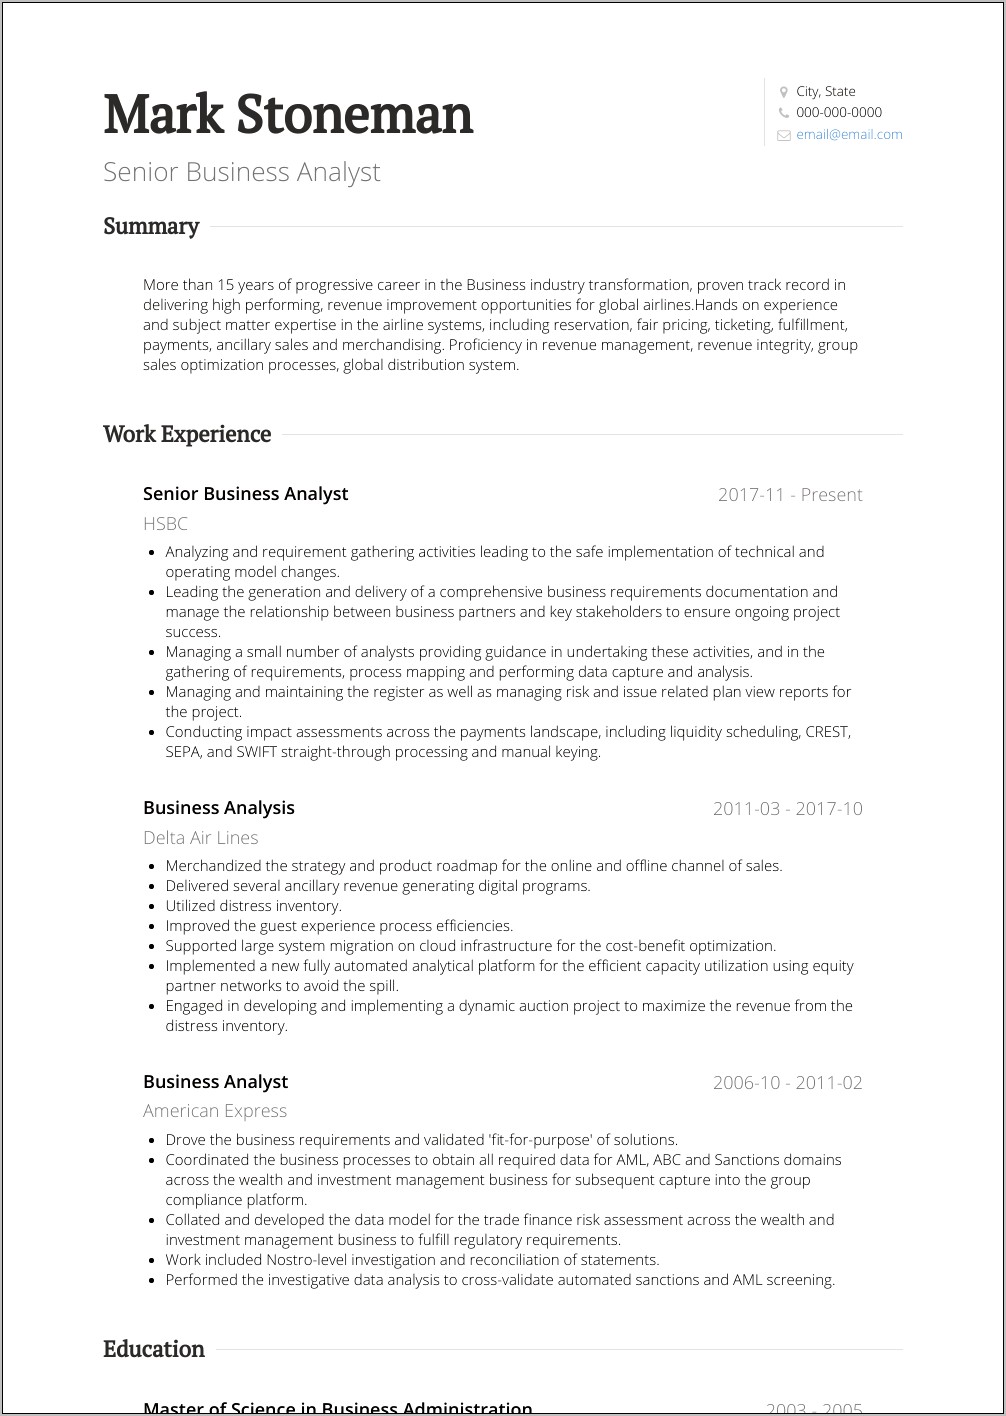 Sample Resume For Senior Business Analyst